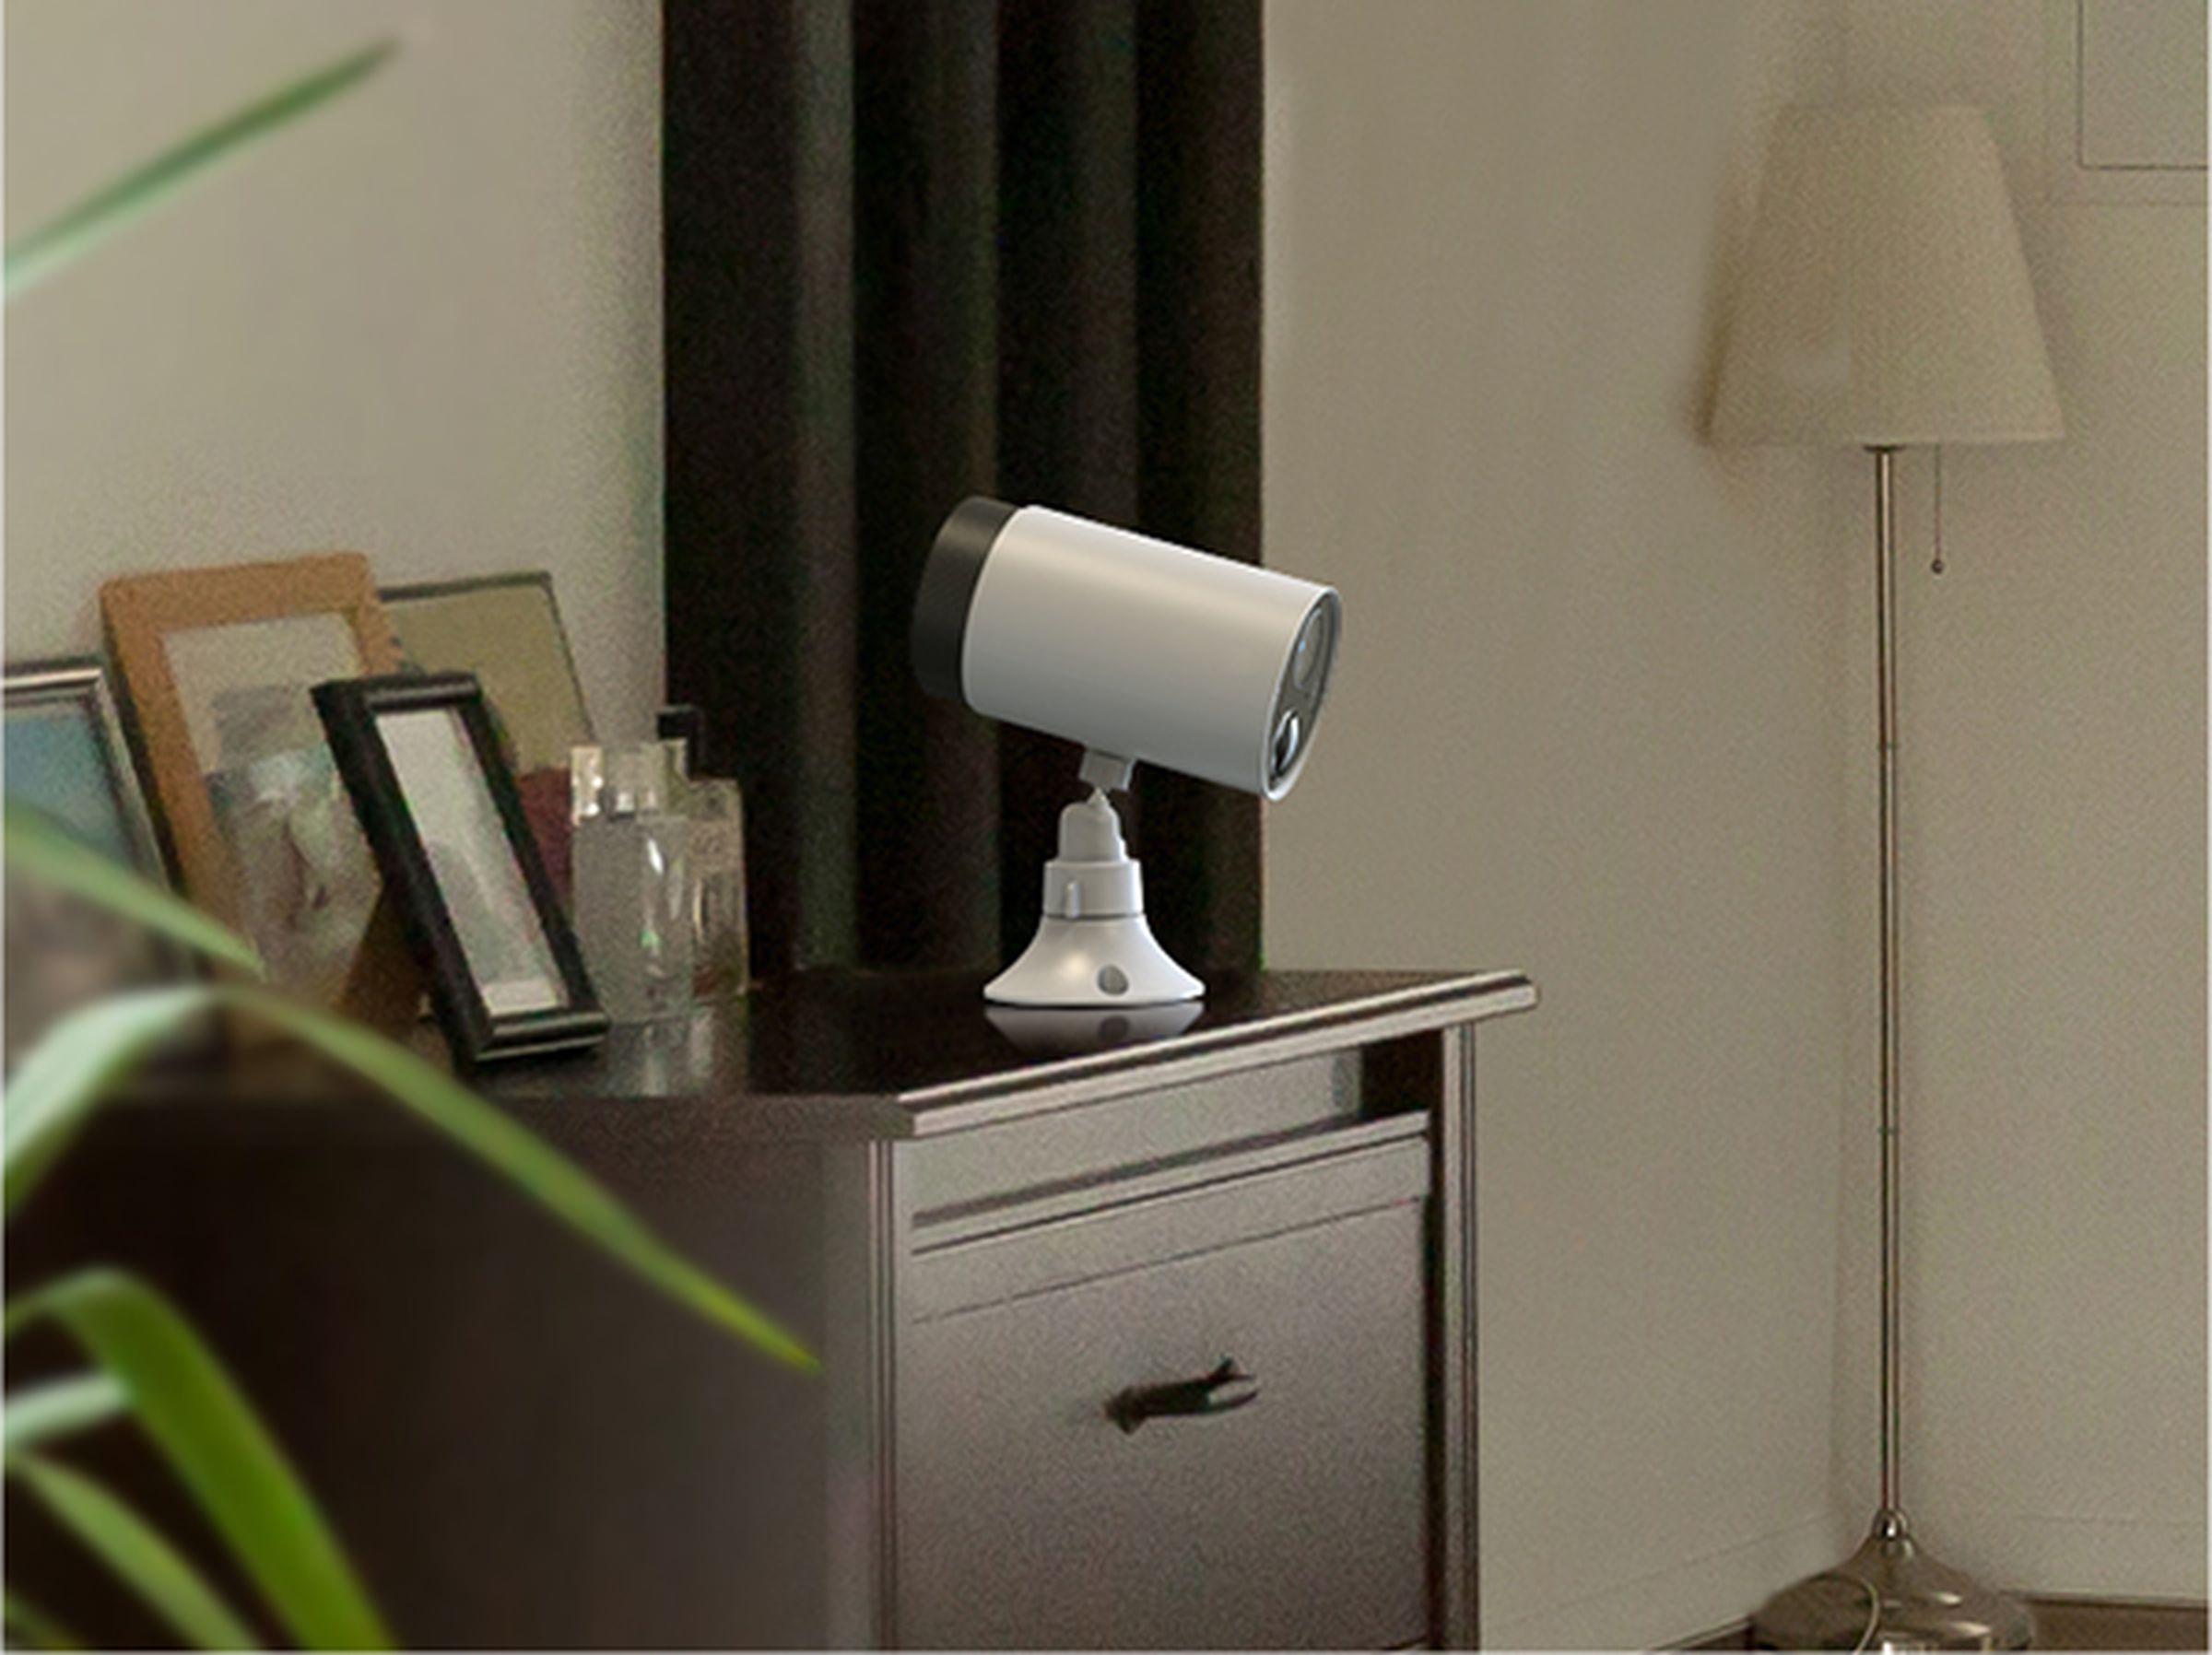 تاپو می‌گوید دوربین‌ها را می‌توان در داخل خانه استفاده کرد – اما دقیقاً با هم ترکیب نمی‌شوند.